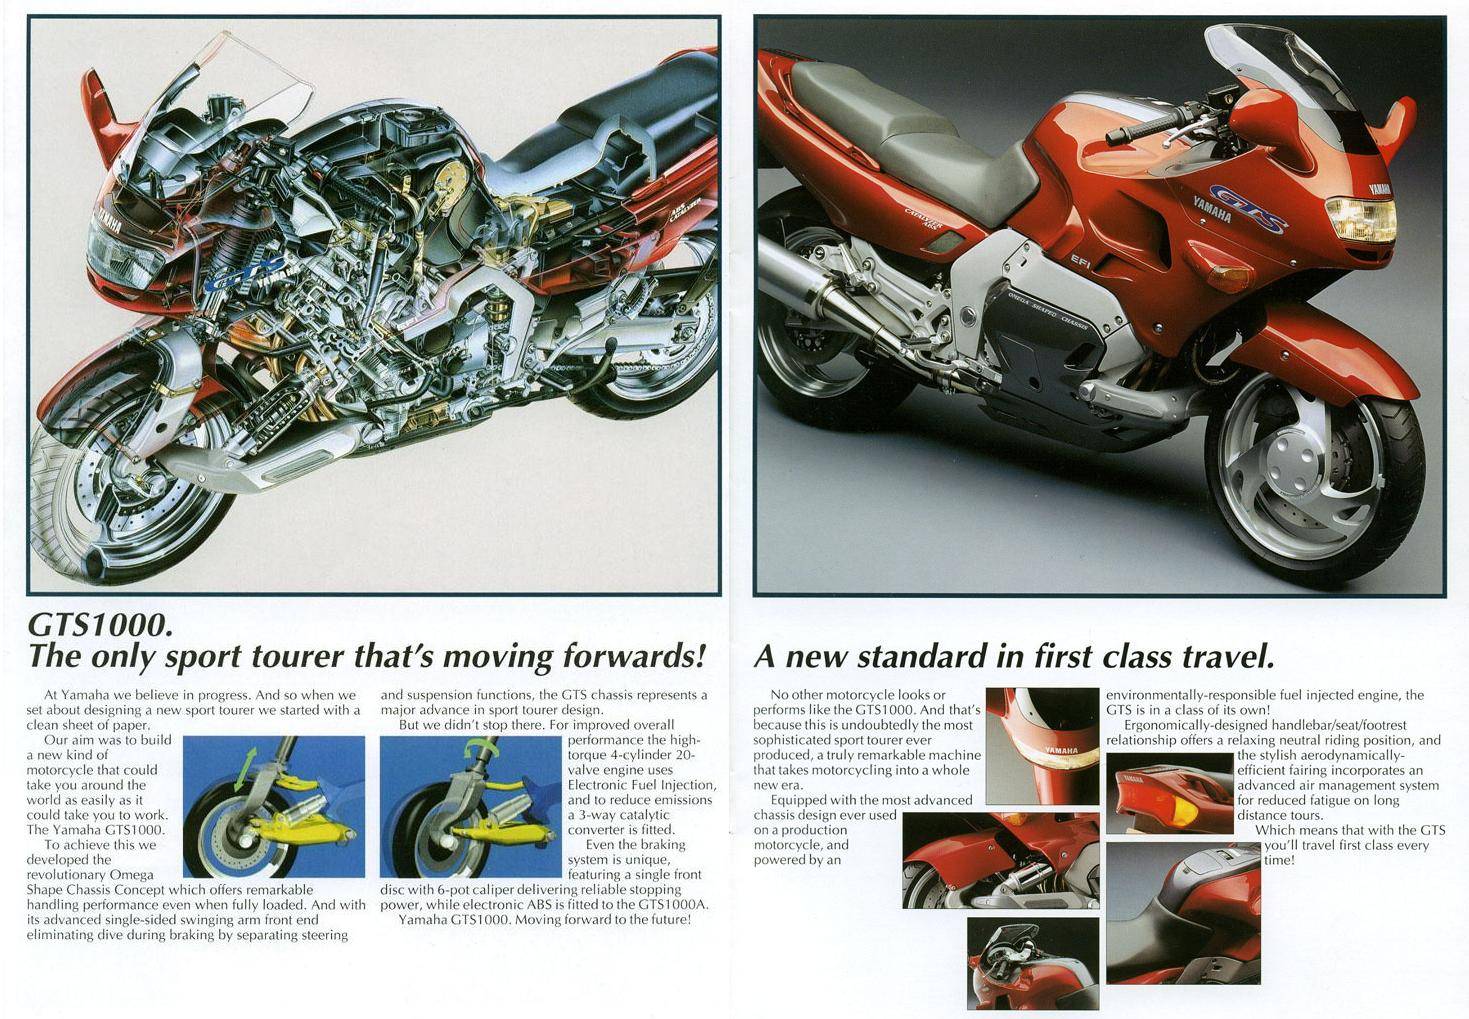 В статье дан обзор мотоцикла yamaha gts 1000, описаны его технические характеристики, возможности, дизайн.